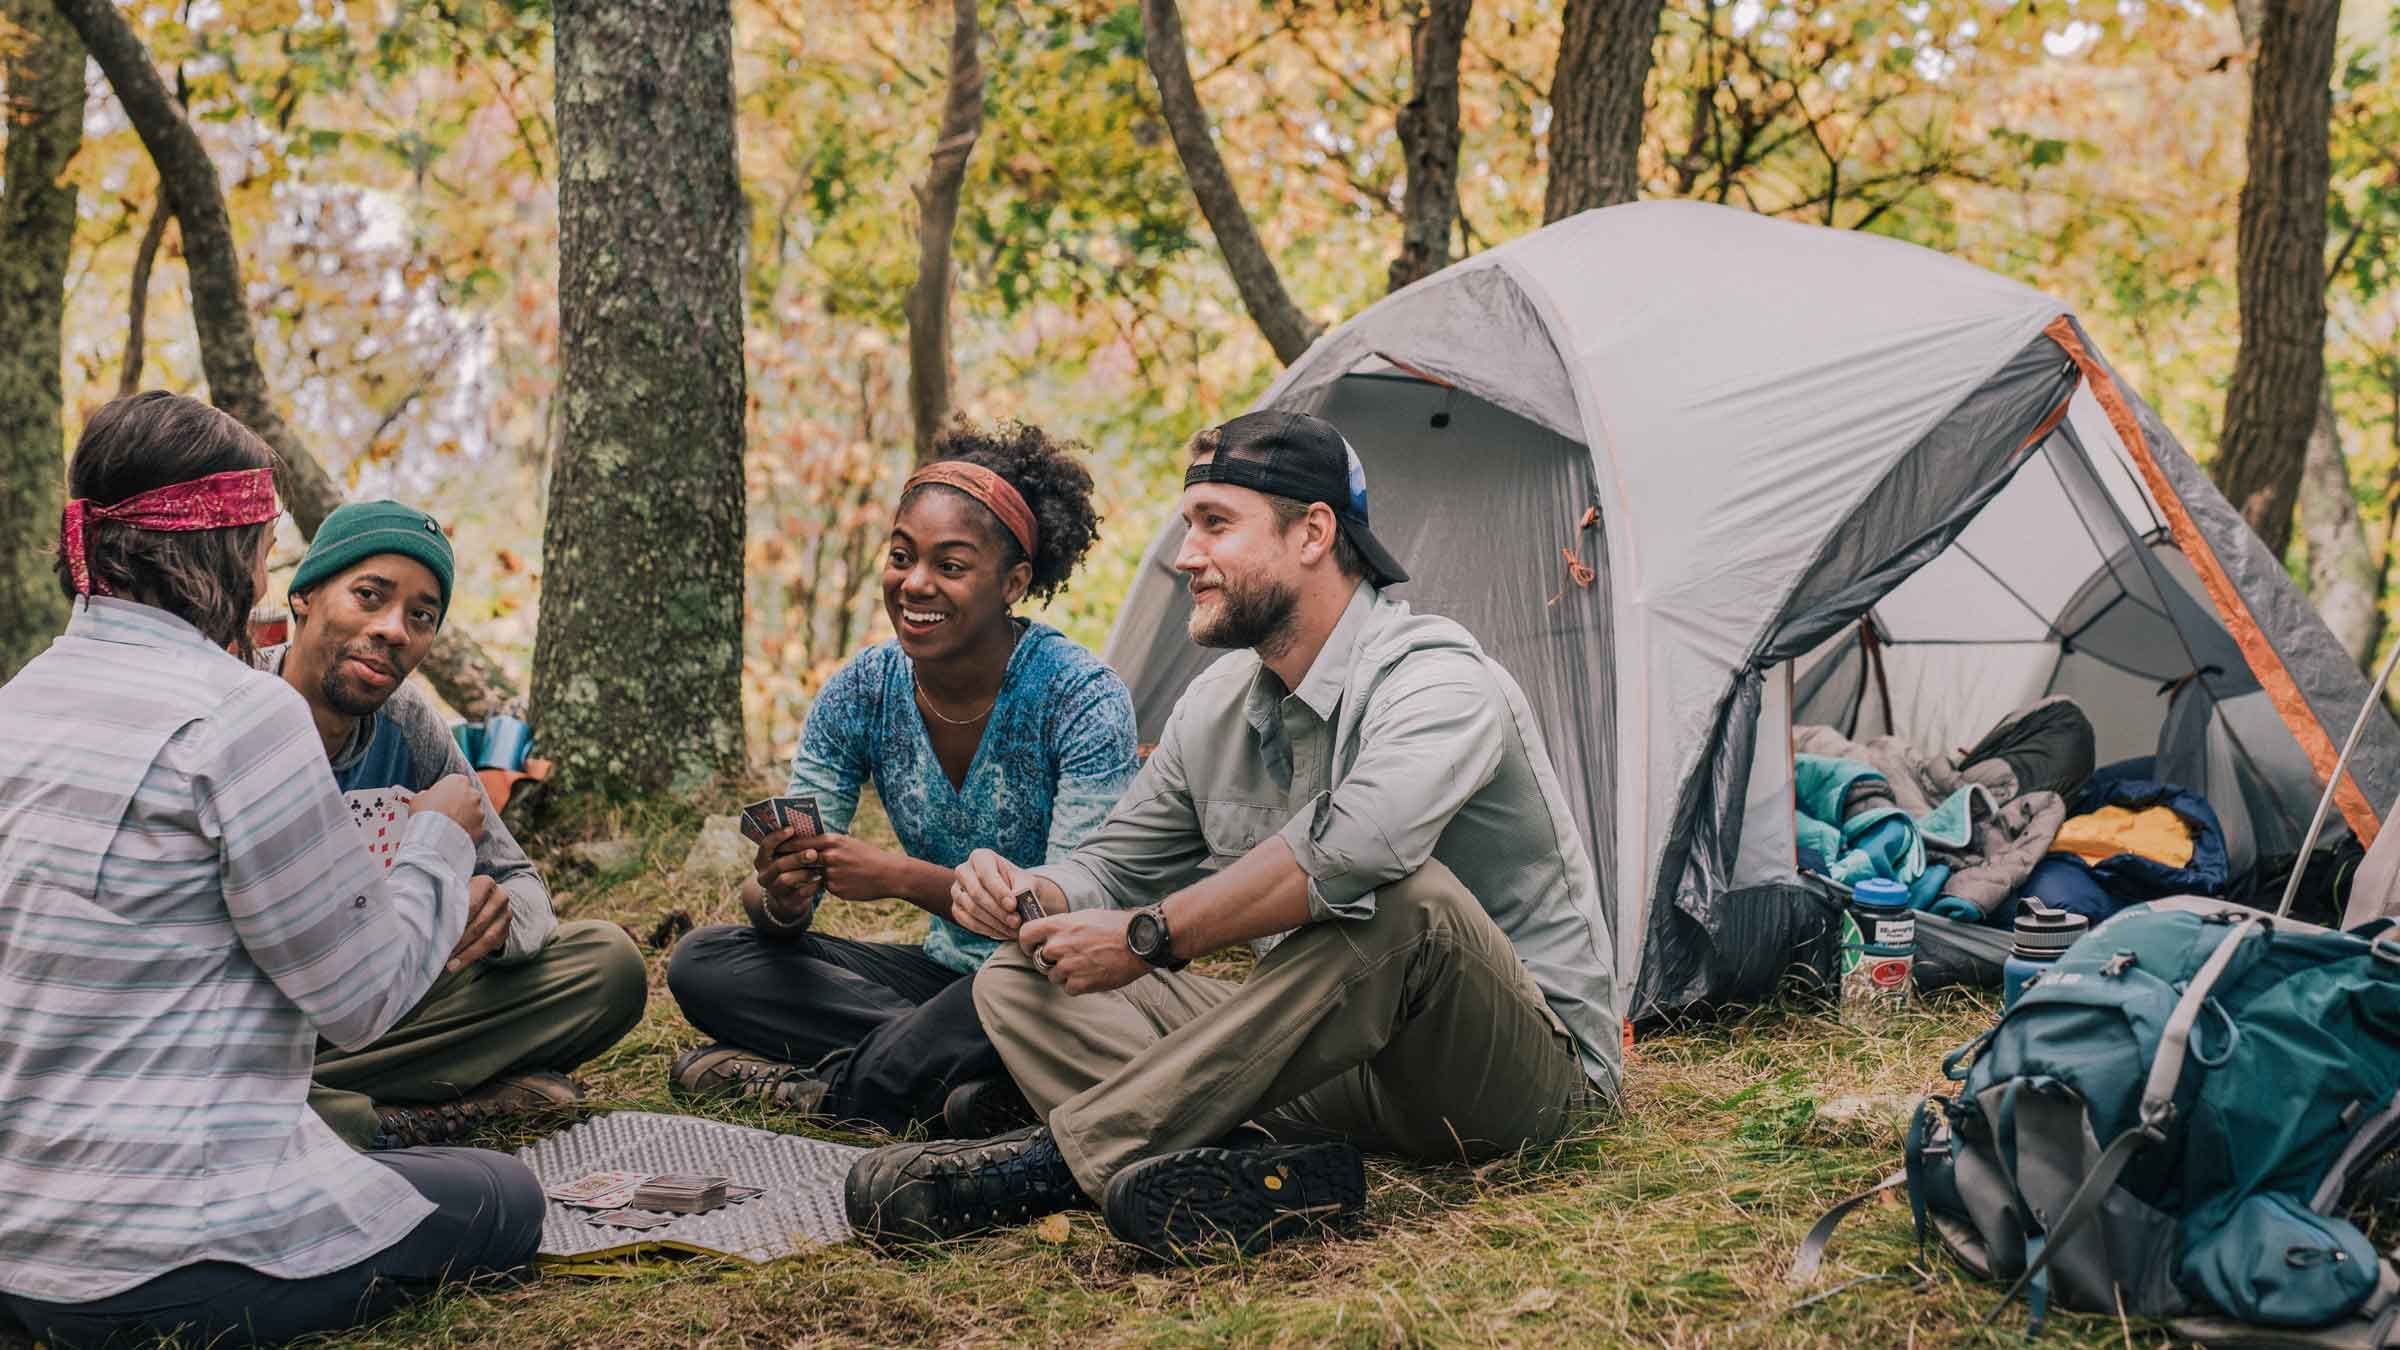 Go camping лагерь. Кемпинг люди. Фестиваль с палатками. Люди кемпинг отдыхают. Компания в походе.